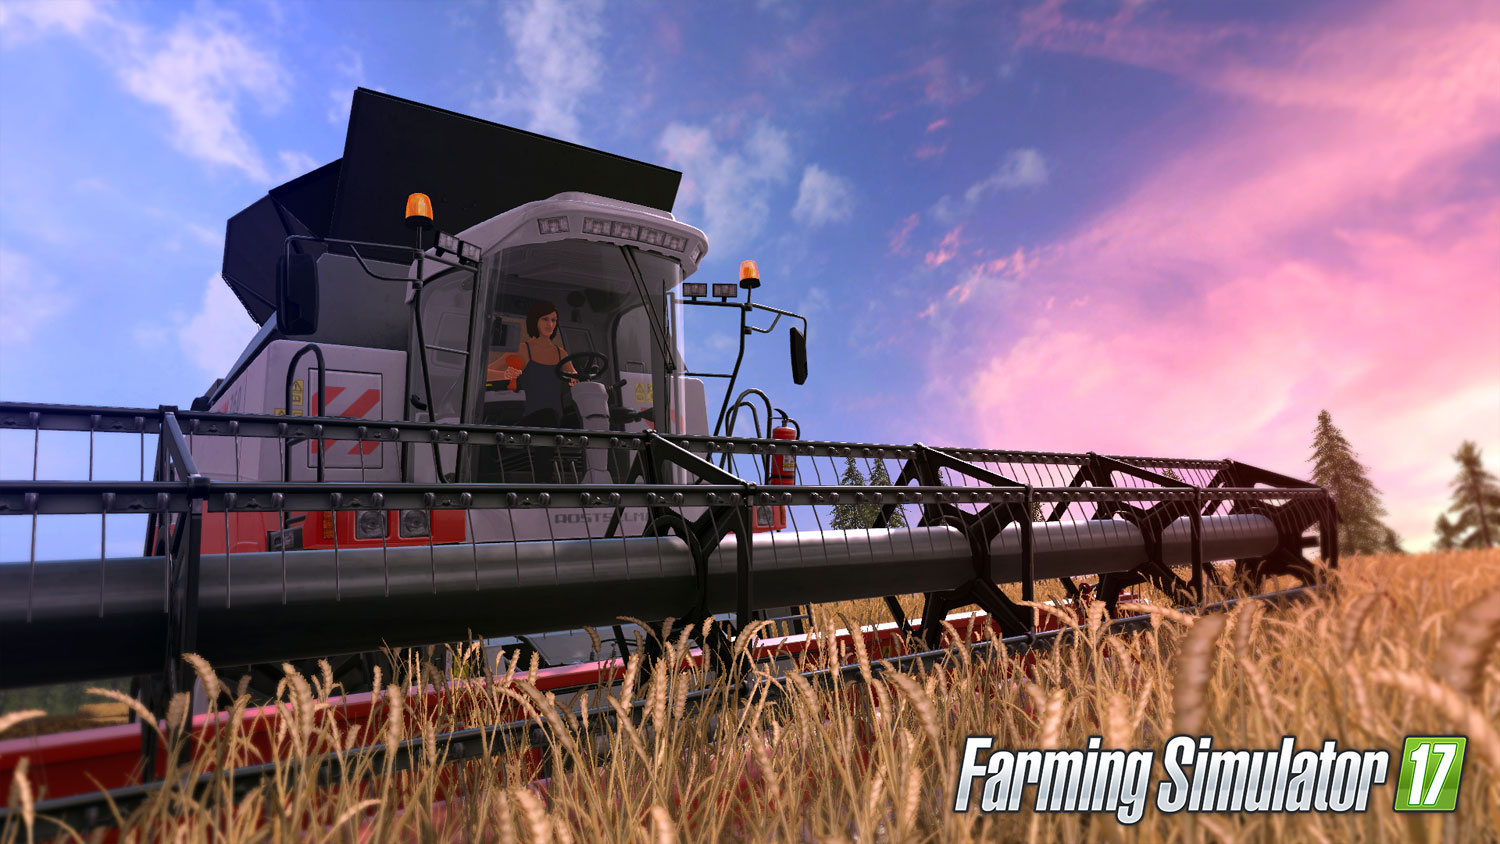 Nowa oferta Deals with Gold to promocja na Farming Simulator 17, odświeżone Duke Nukem 3D i wiele więcej